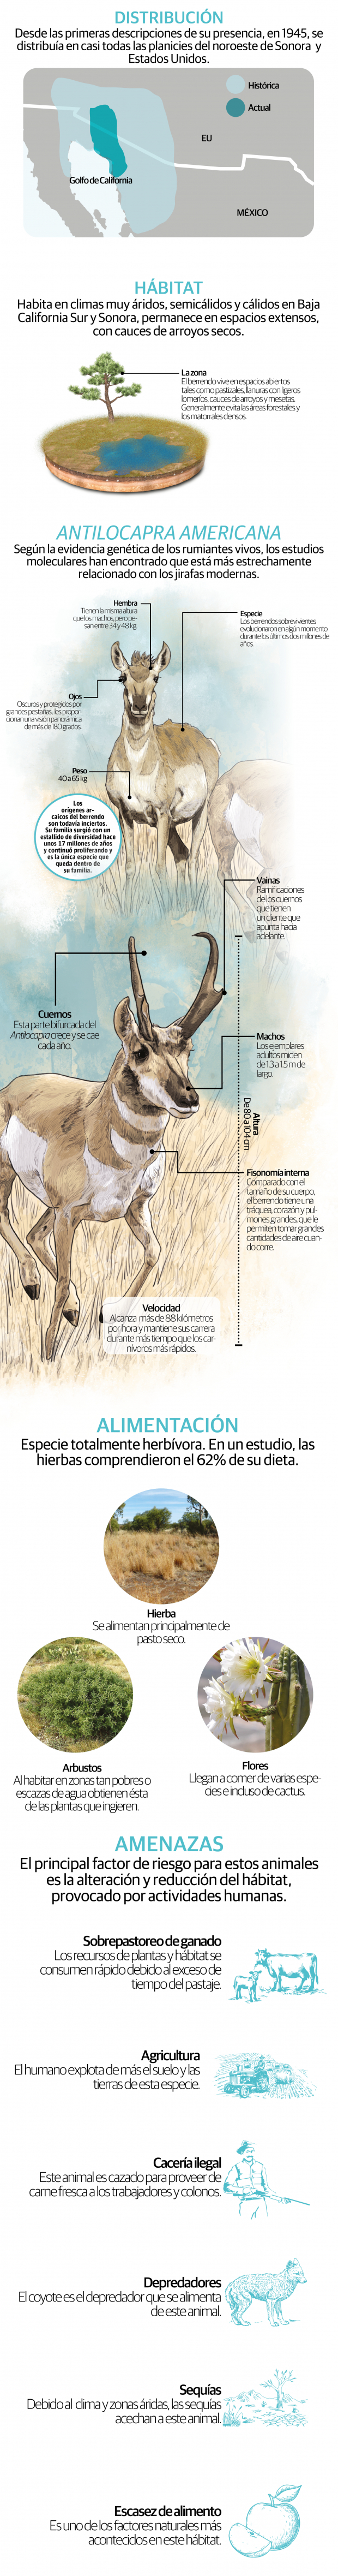 Berrendo, el mamífero más veloz de América que sobrevive a sequías, pero no a la caza